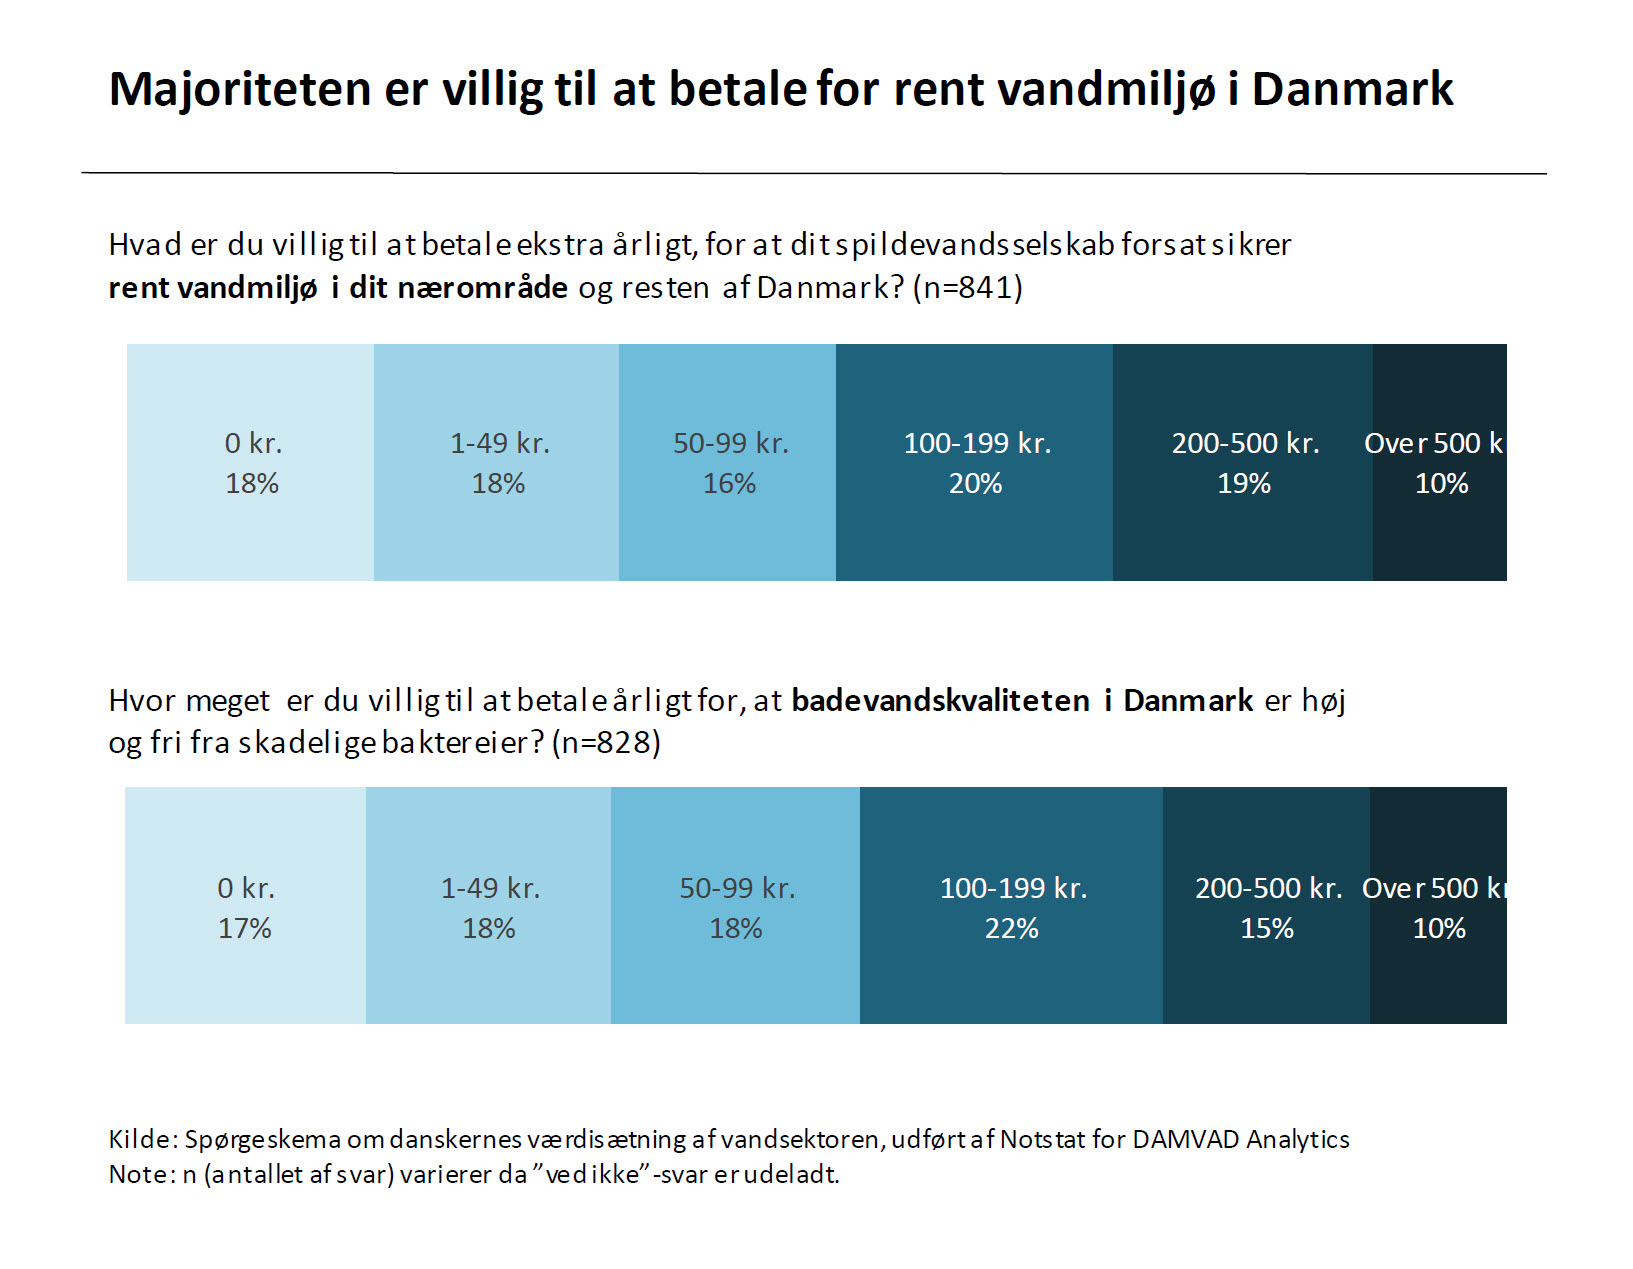 Majoriteten er villig til at betale for rent vandmiljø i Danmark